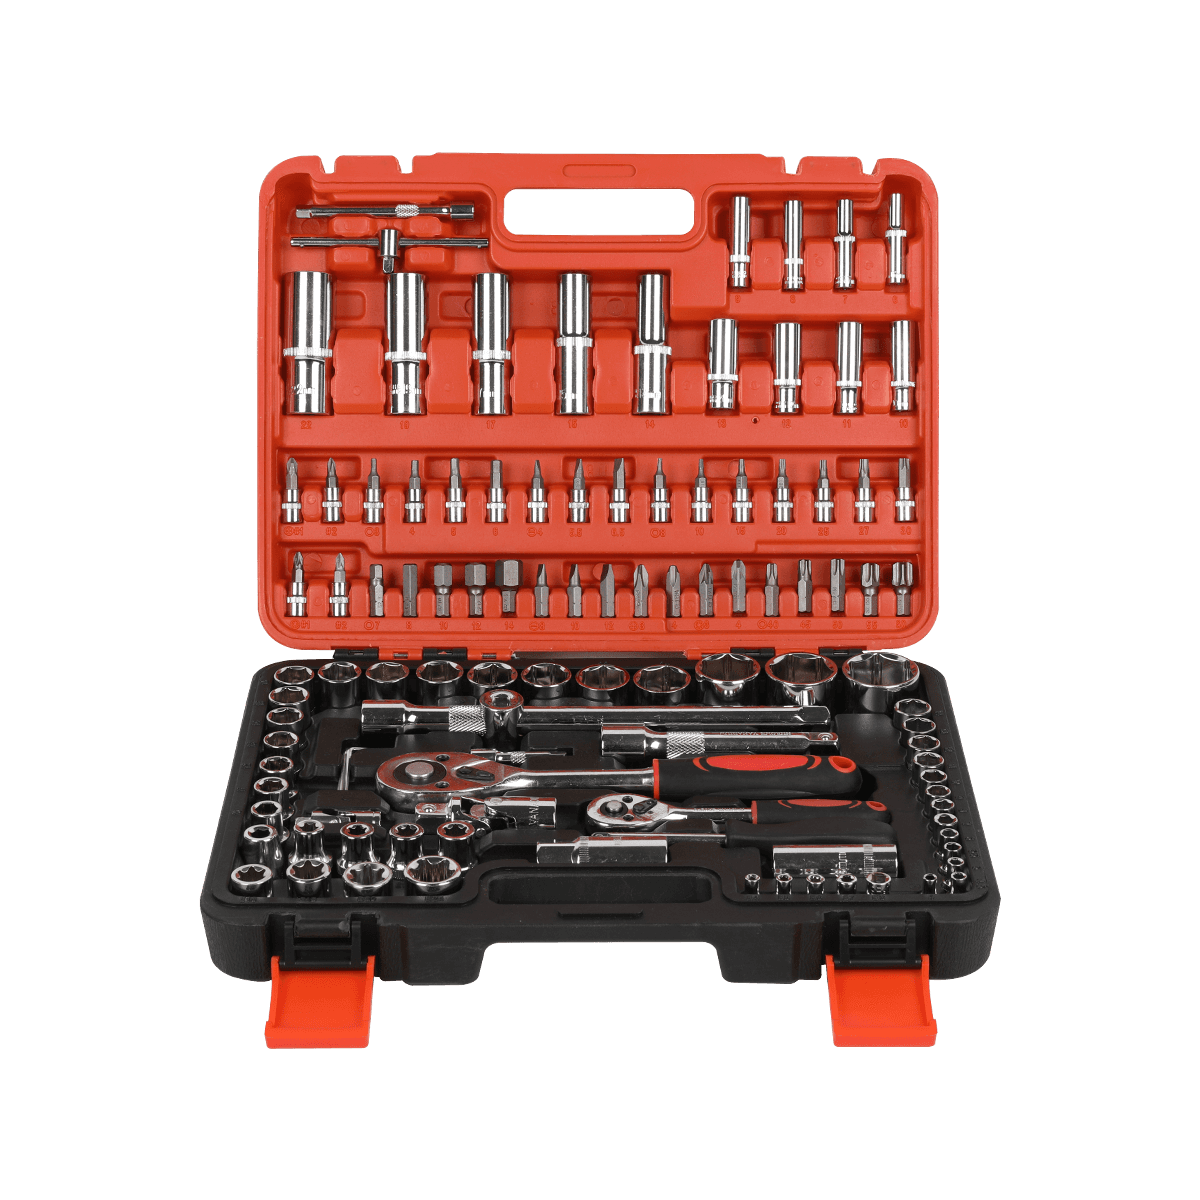 Juego de herramientas manuales de reparación móvil de sujetadores de hardware de 108 piezas Juegos de herramientas generales para el hogar